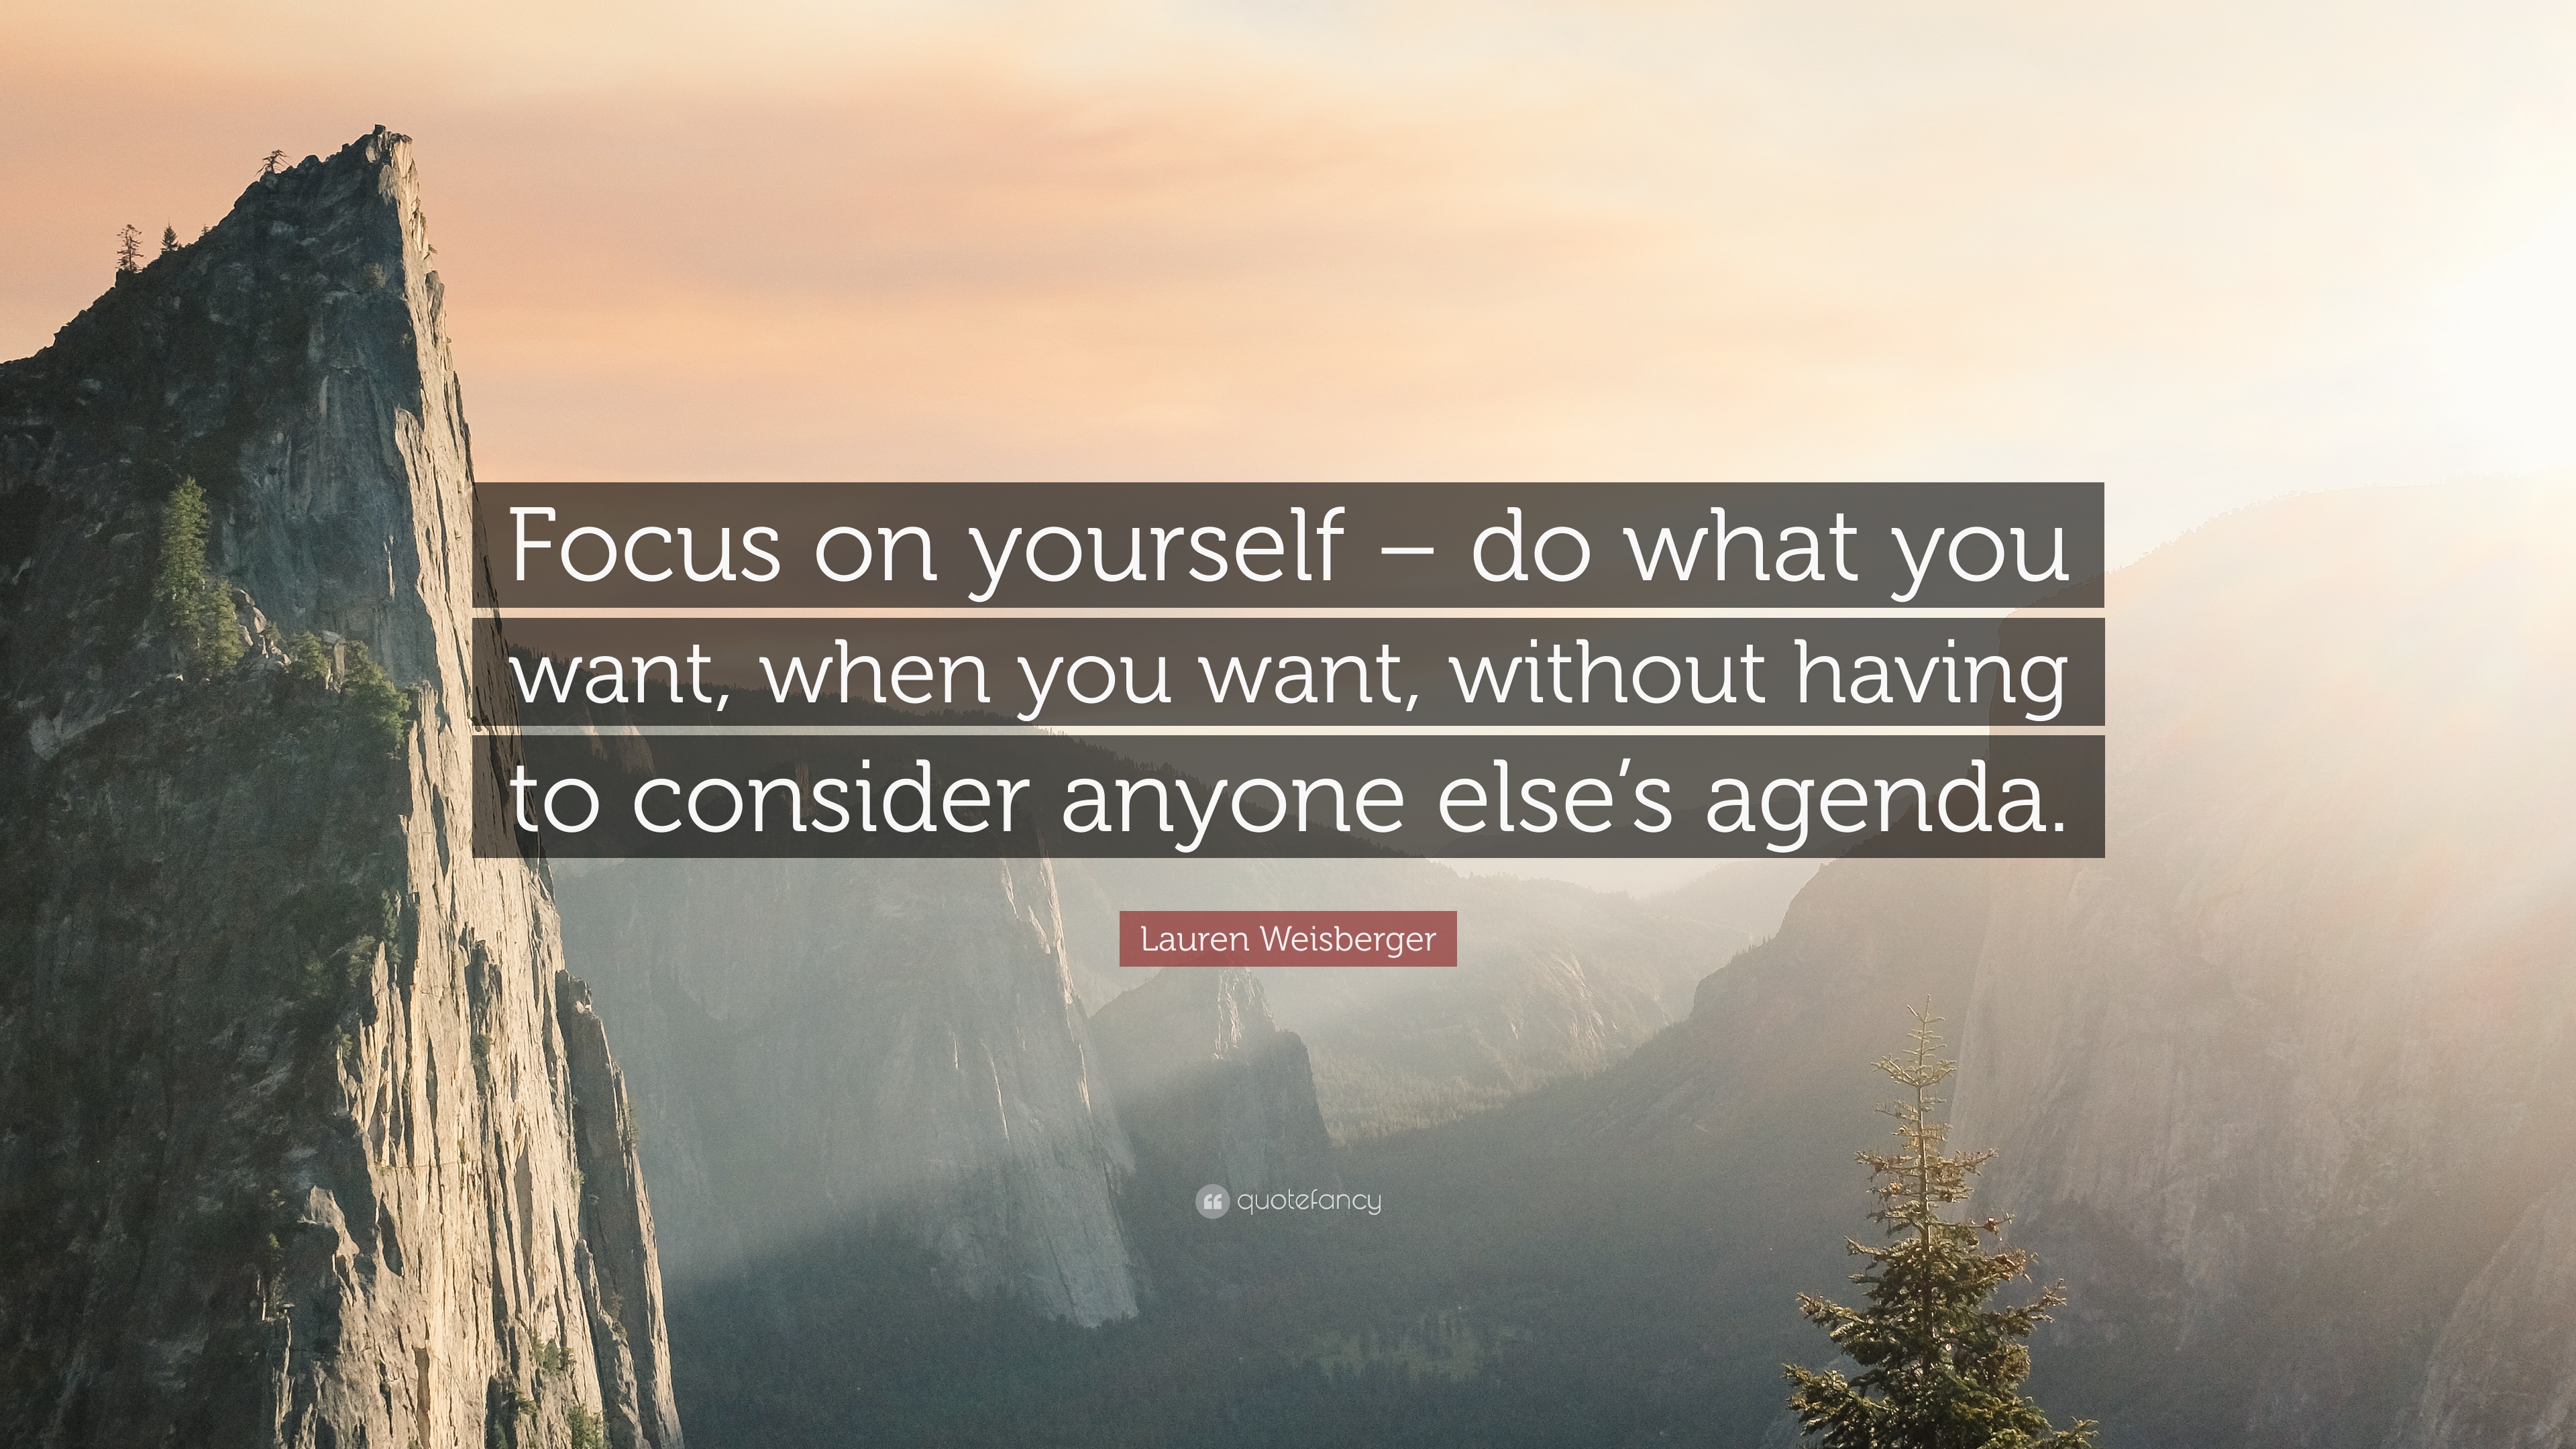 Lauren Weisberger Quote: “Focus on yourself